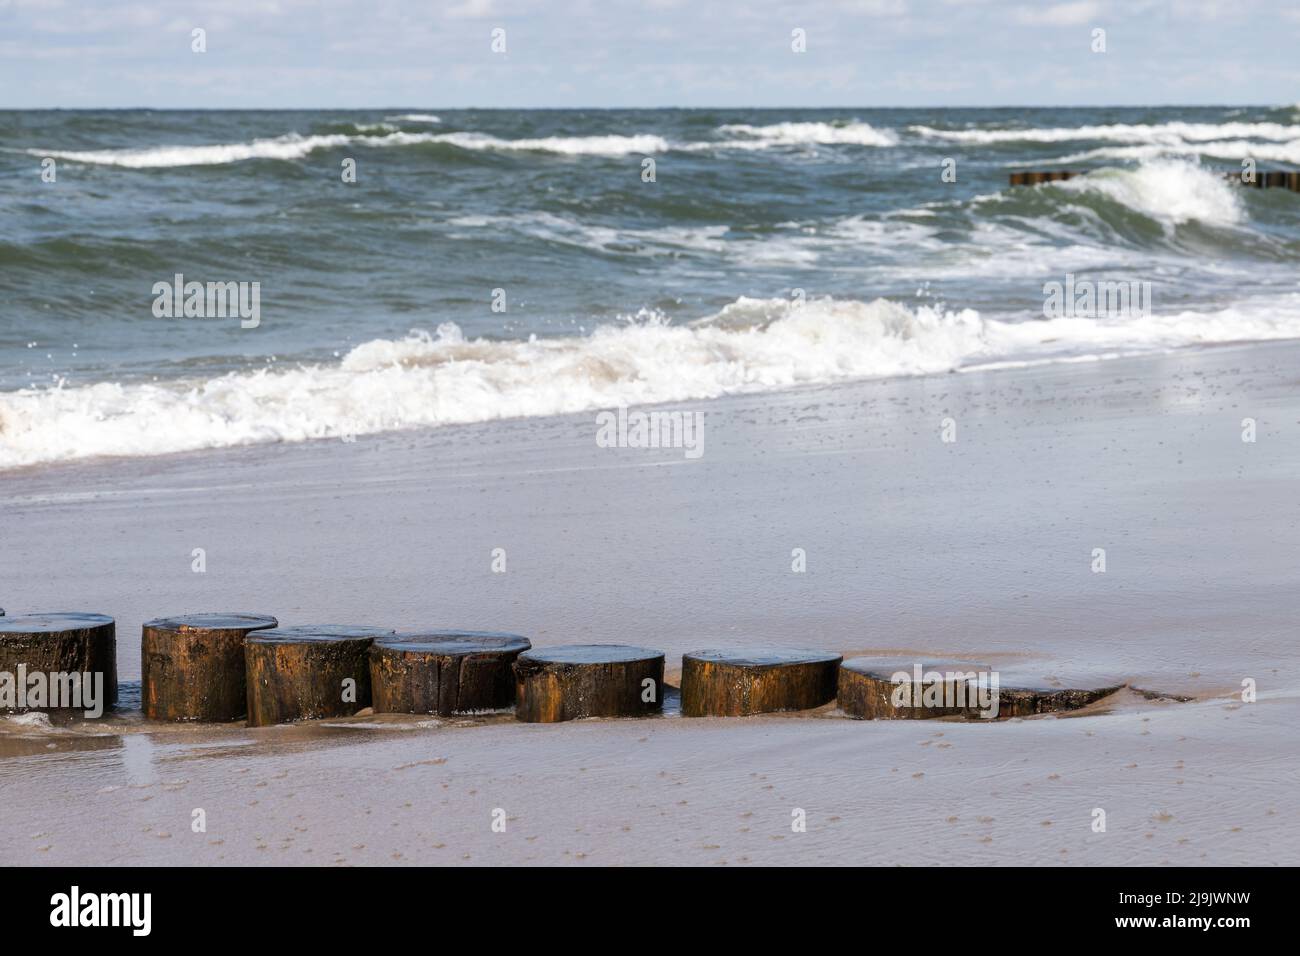 Vecchia struttura in legno frangiflutti sulla costa del Mar Baltico, foto ravvicinata con messa a fuoco selettiva. Zelenogradsk, Kaliningrad Oblast, Russia Foto Stock